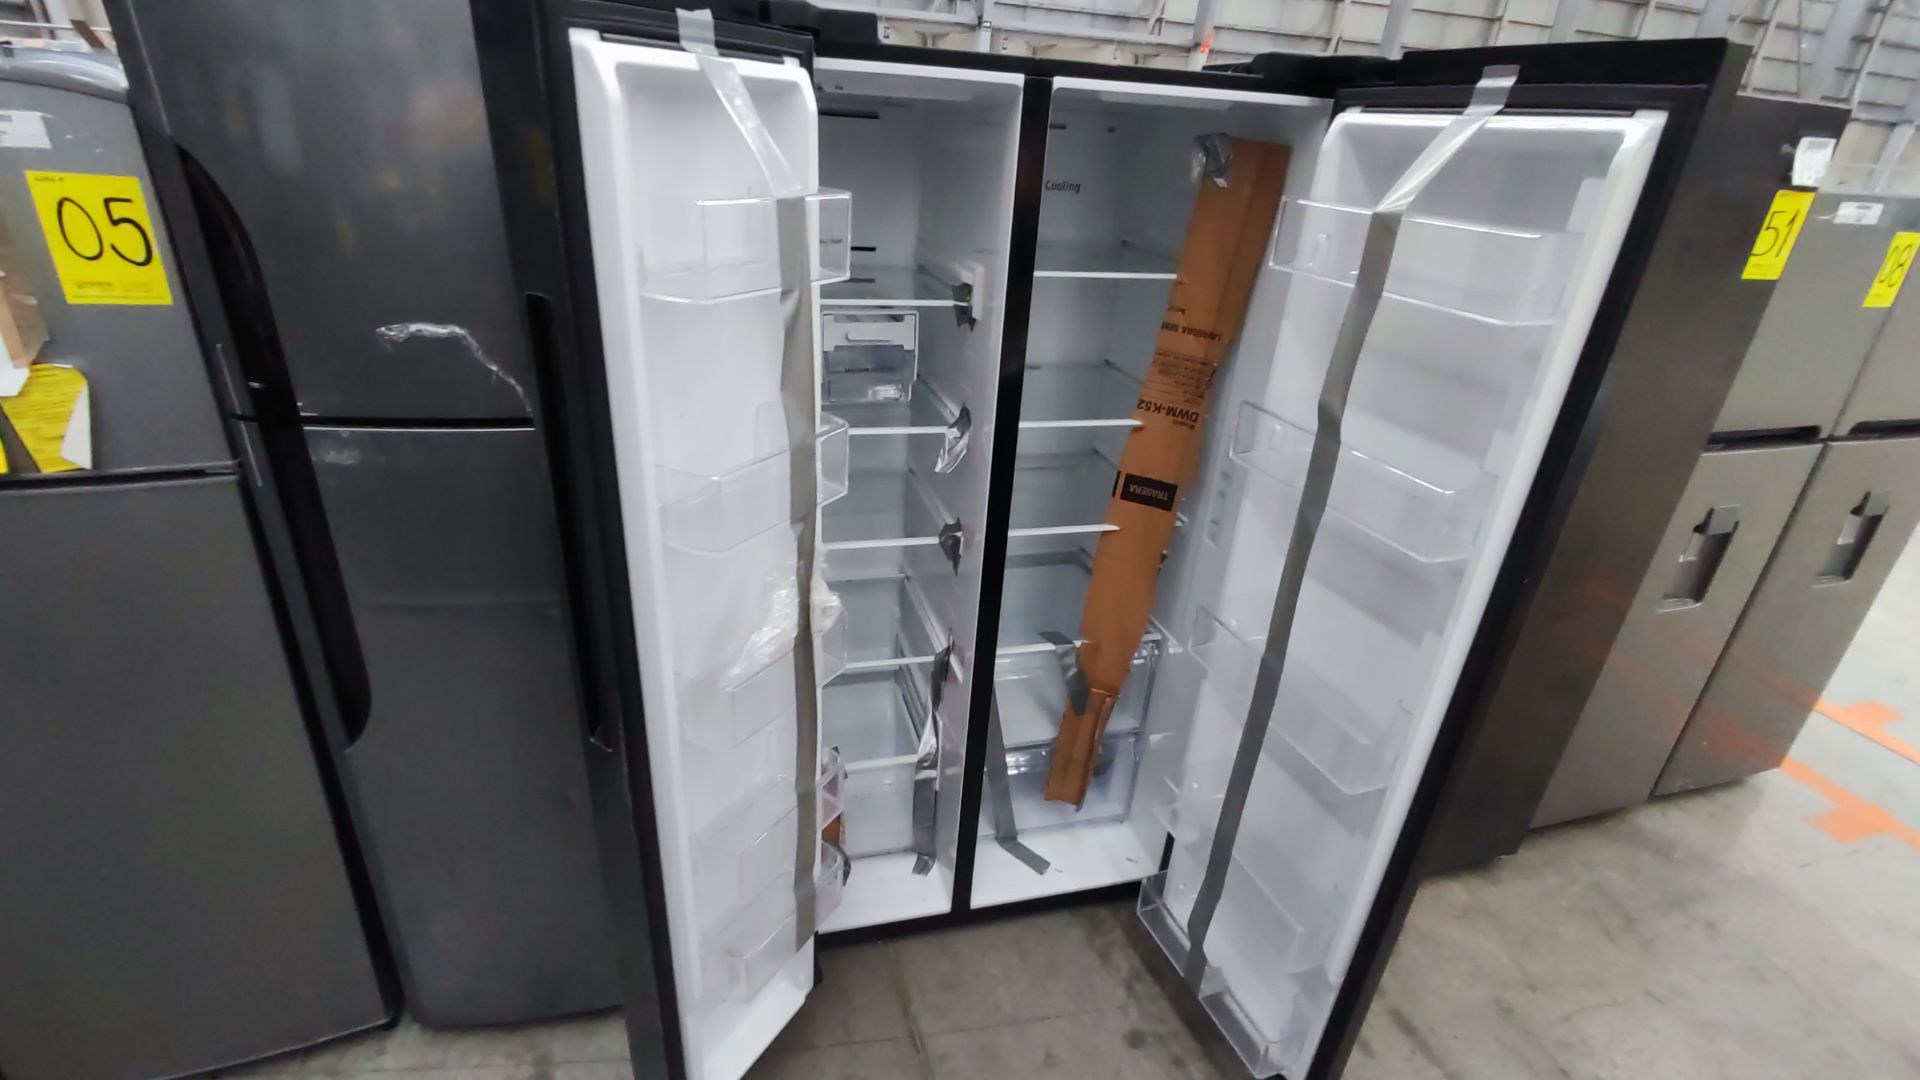 1 Refrigerador Marca Samsung, Modelo RS28T5B00B1, Serie 0B2V4BBT300506M, Color Gris Detalles Estéti - Image 9 of 11